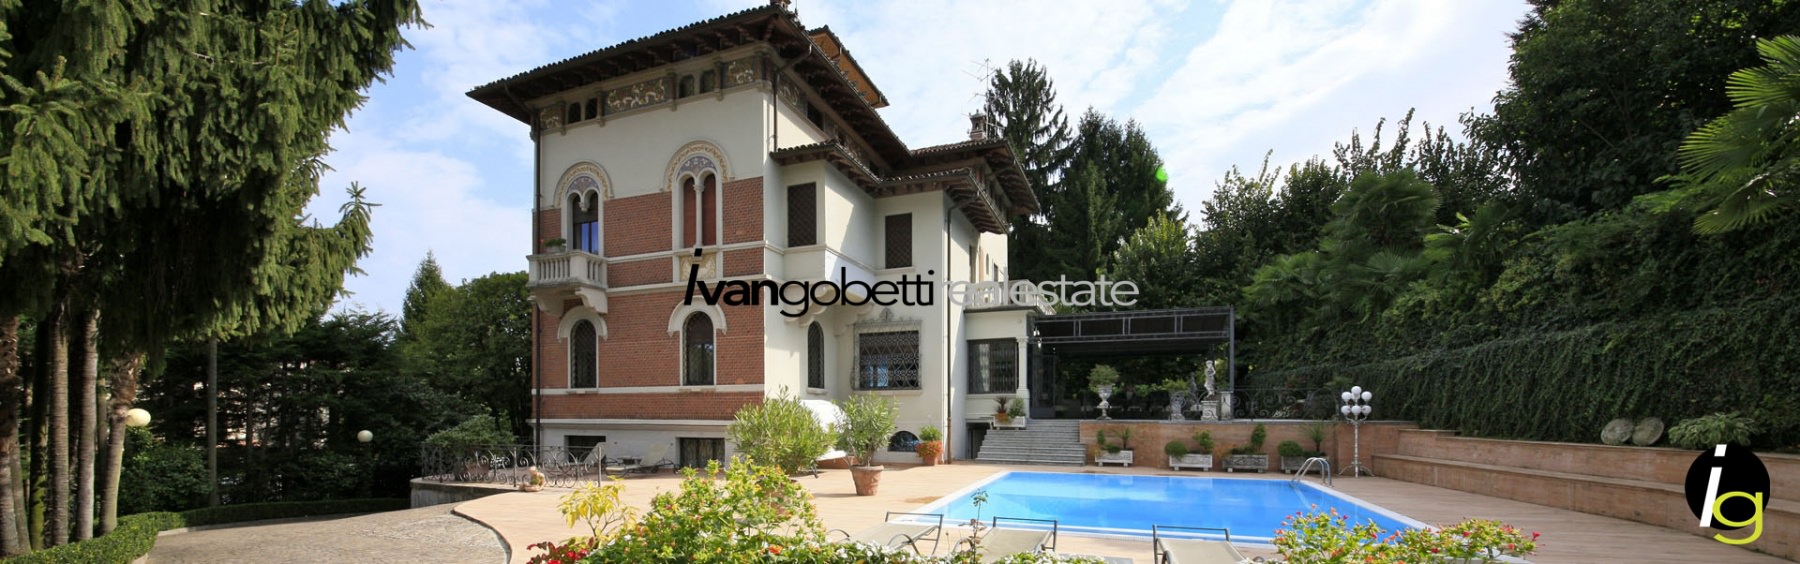 Historical villa in Stresa, Lake Maggiore for sale<br/><span>Product Code: 18309